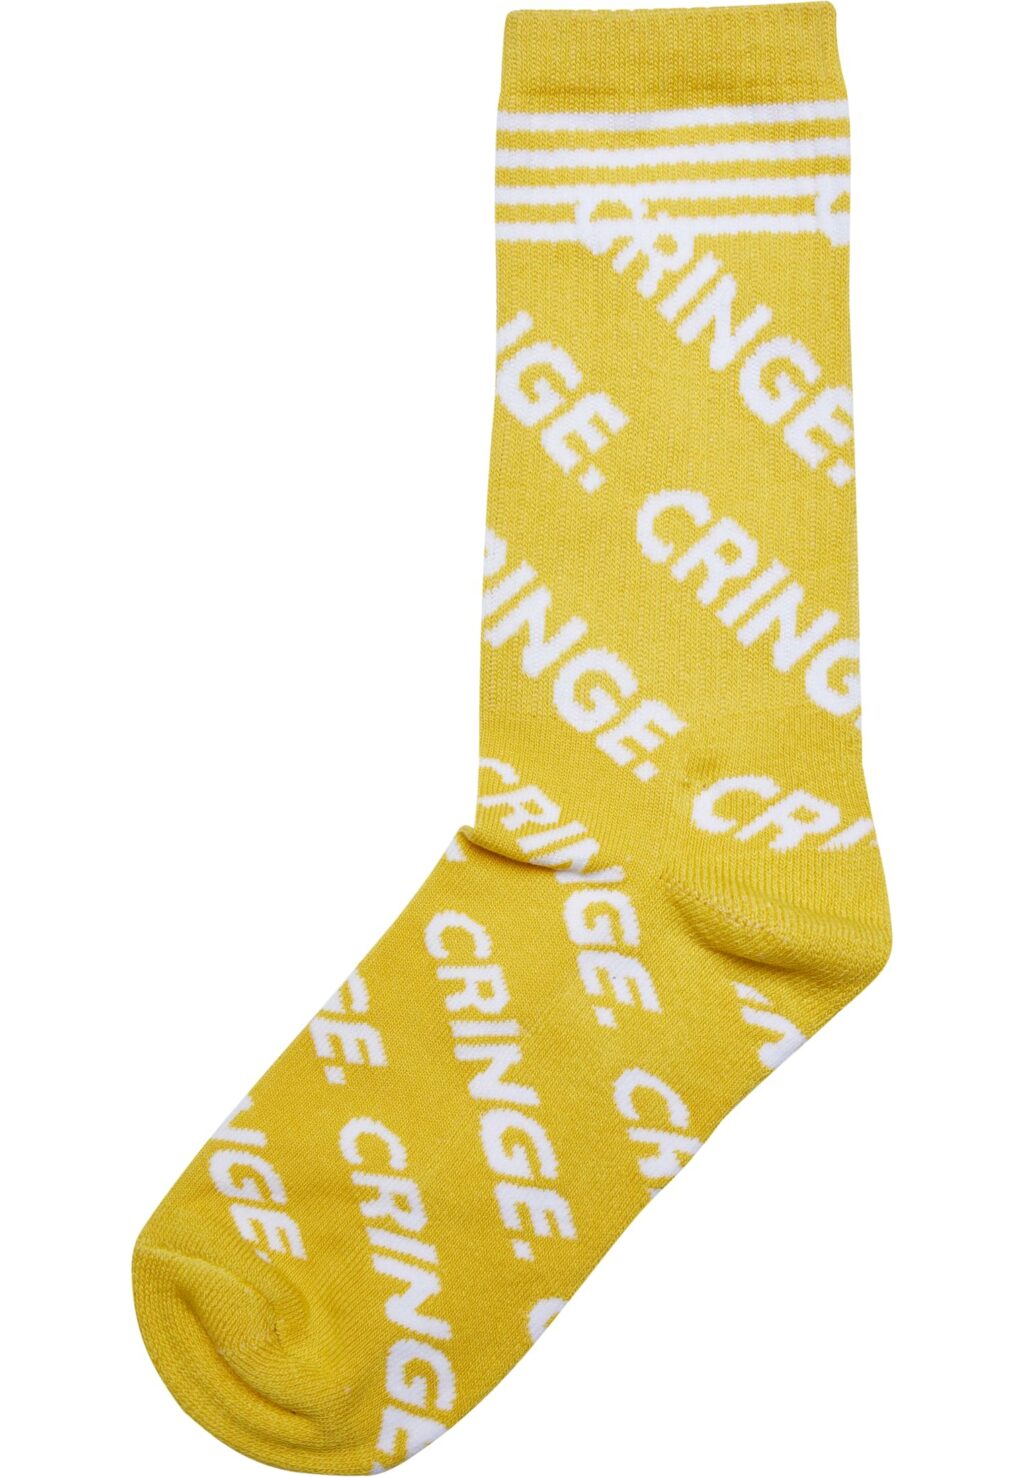 Cringe Socks 3-Pack black/white/yellow MT2318